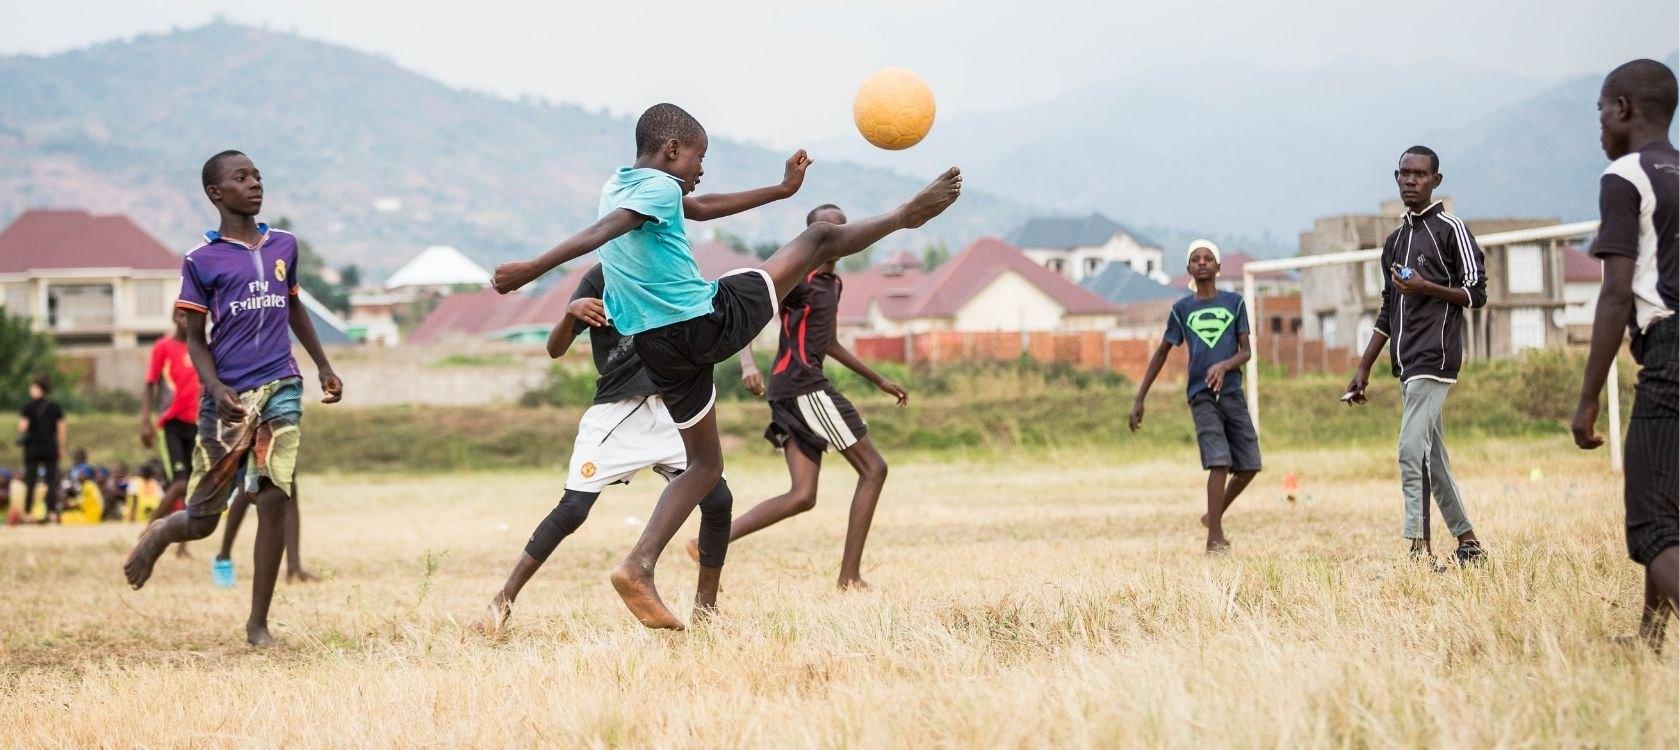 30 académies sportives en Afrique recevront un accompagnement de l’AFD d’ici 2025